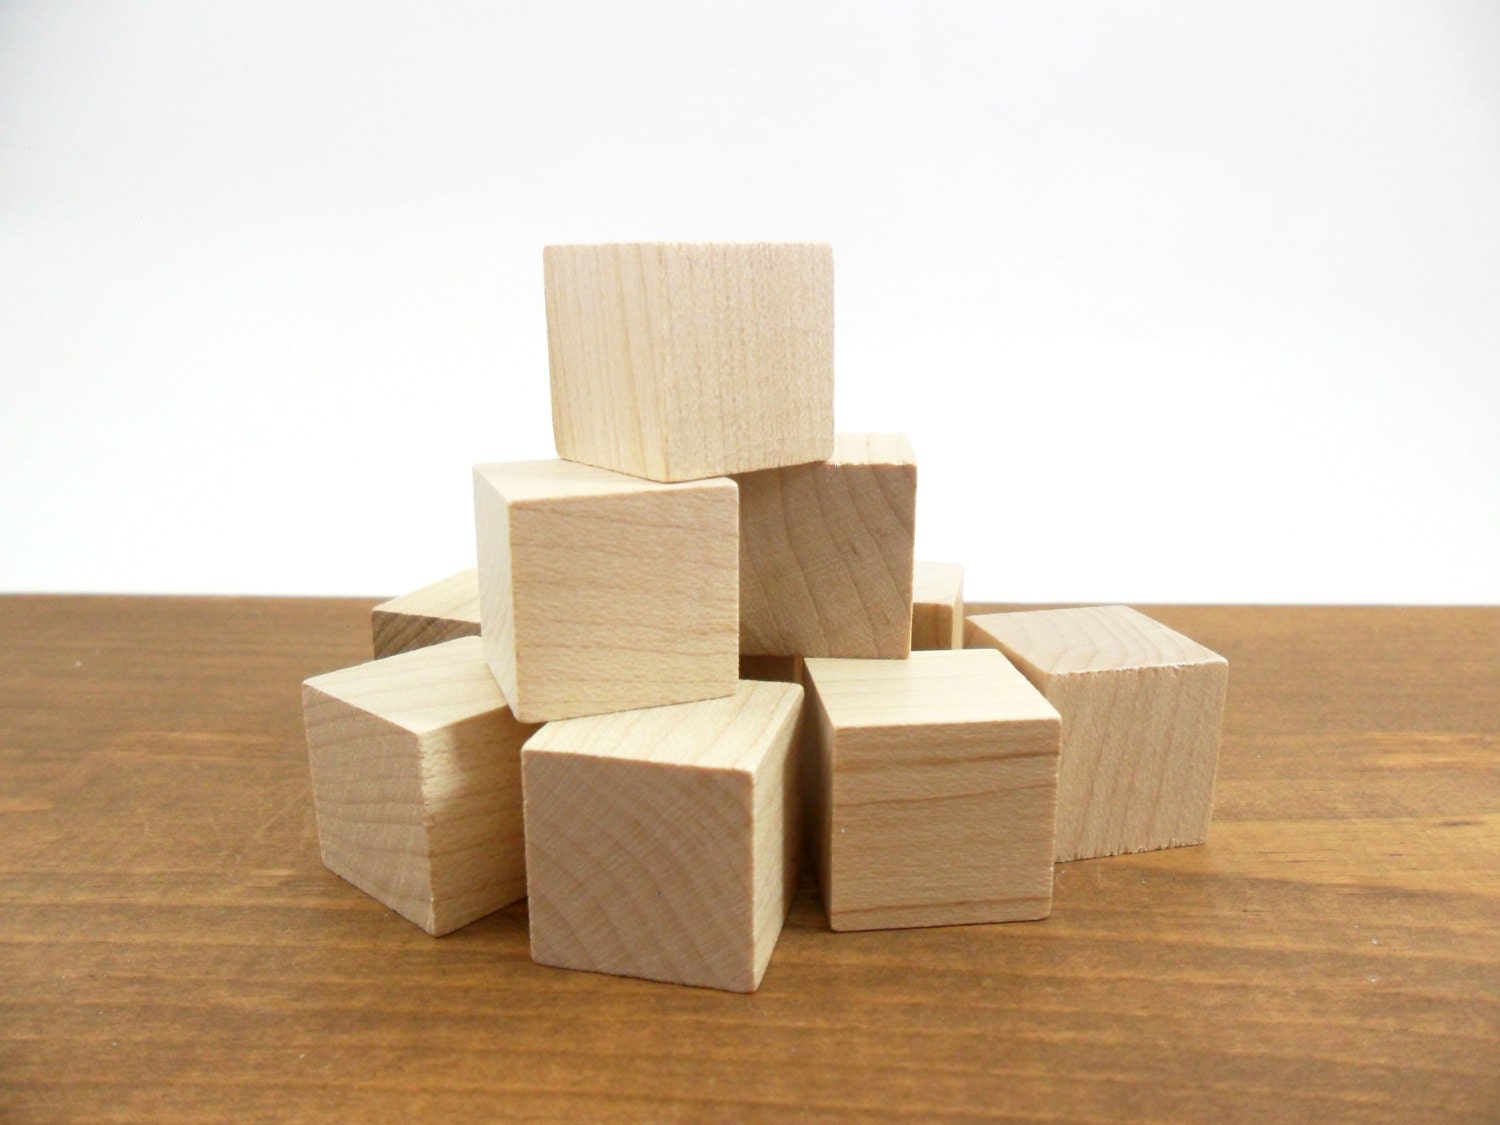 large solid wood blocks